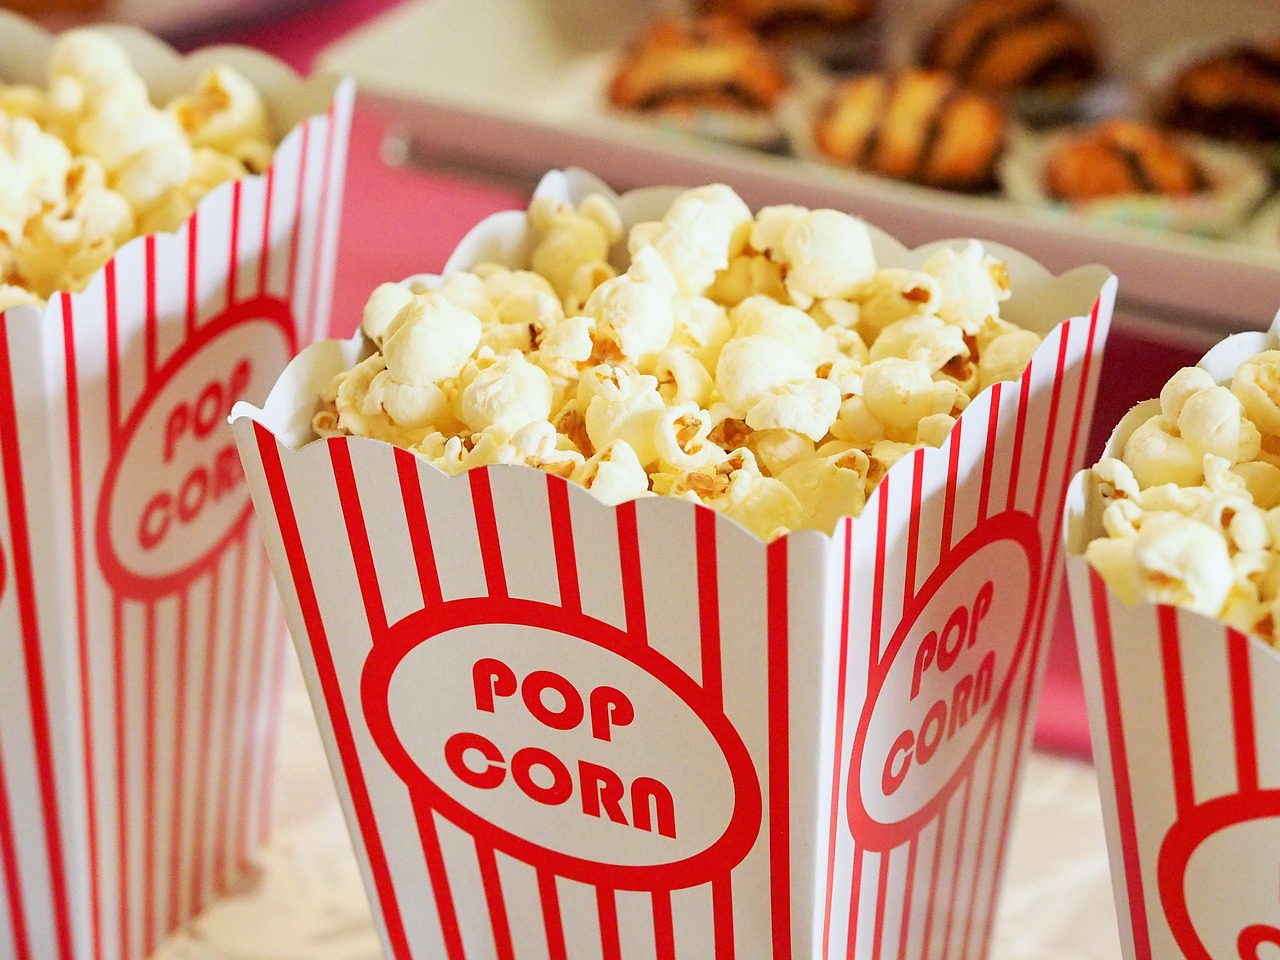 Combien coûte une place de cinéma: Découvrez les tarifs des cinémas populaires